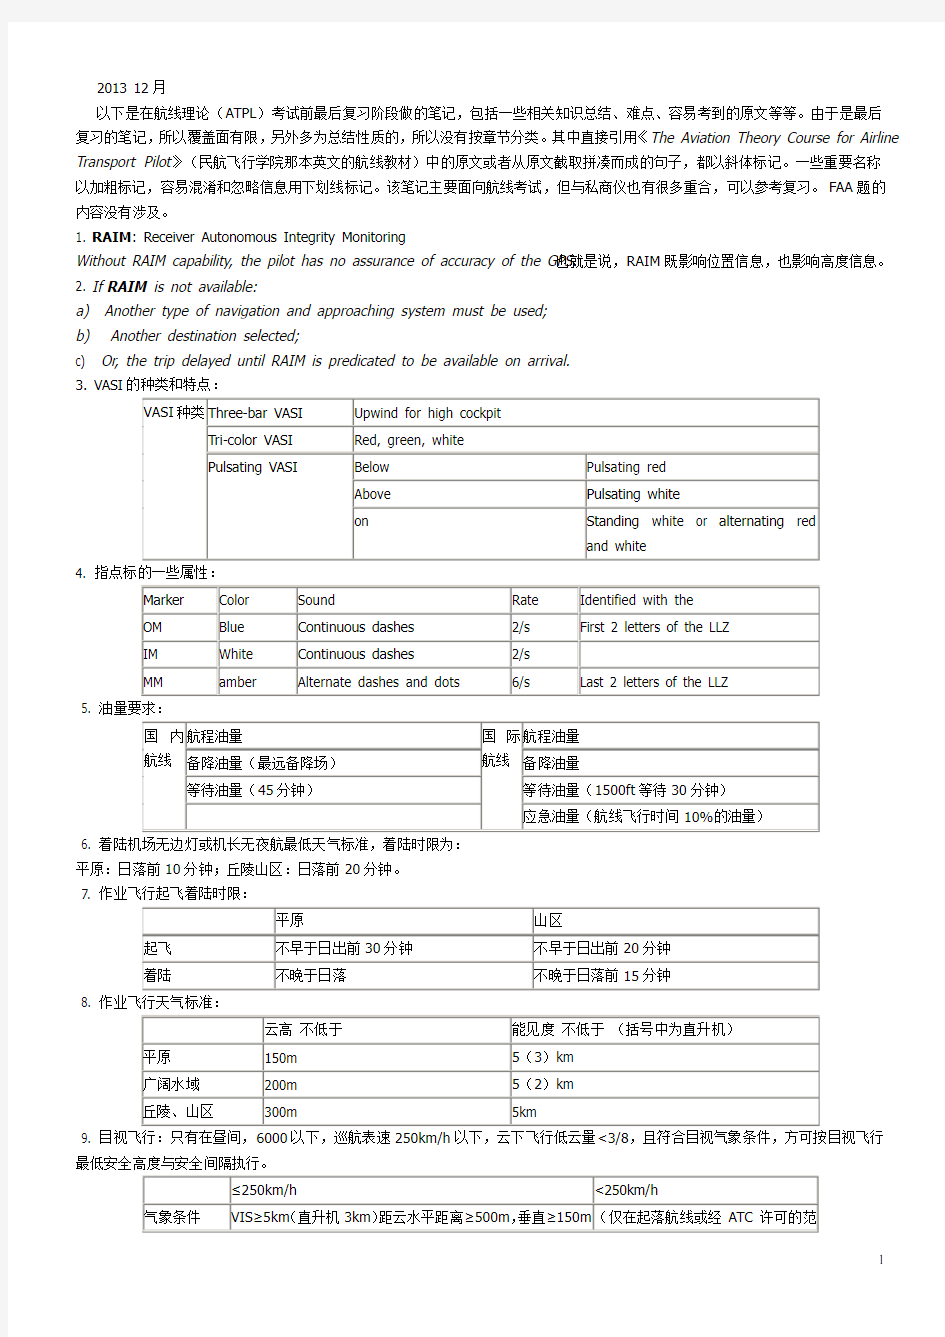 中国民航(cafuc)航线理论考试ATPL考前复习总笔记